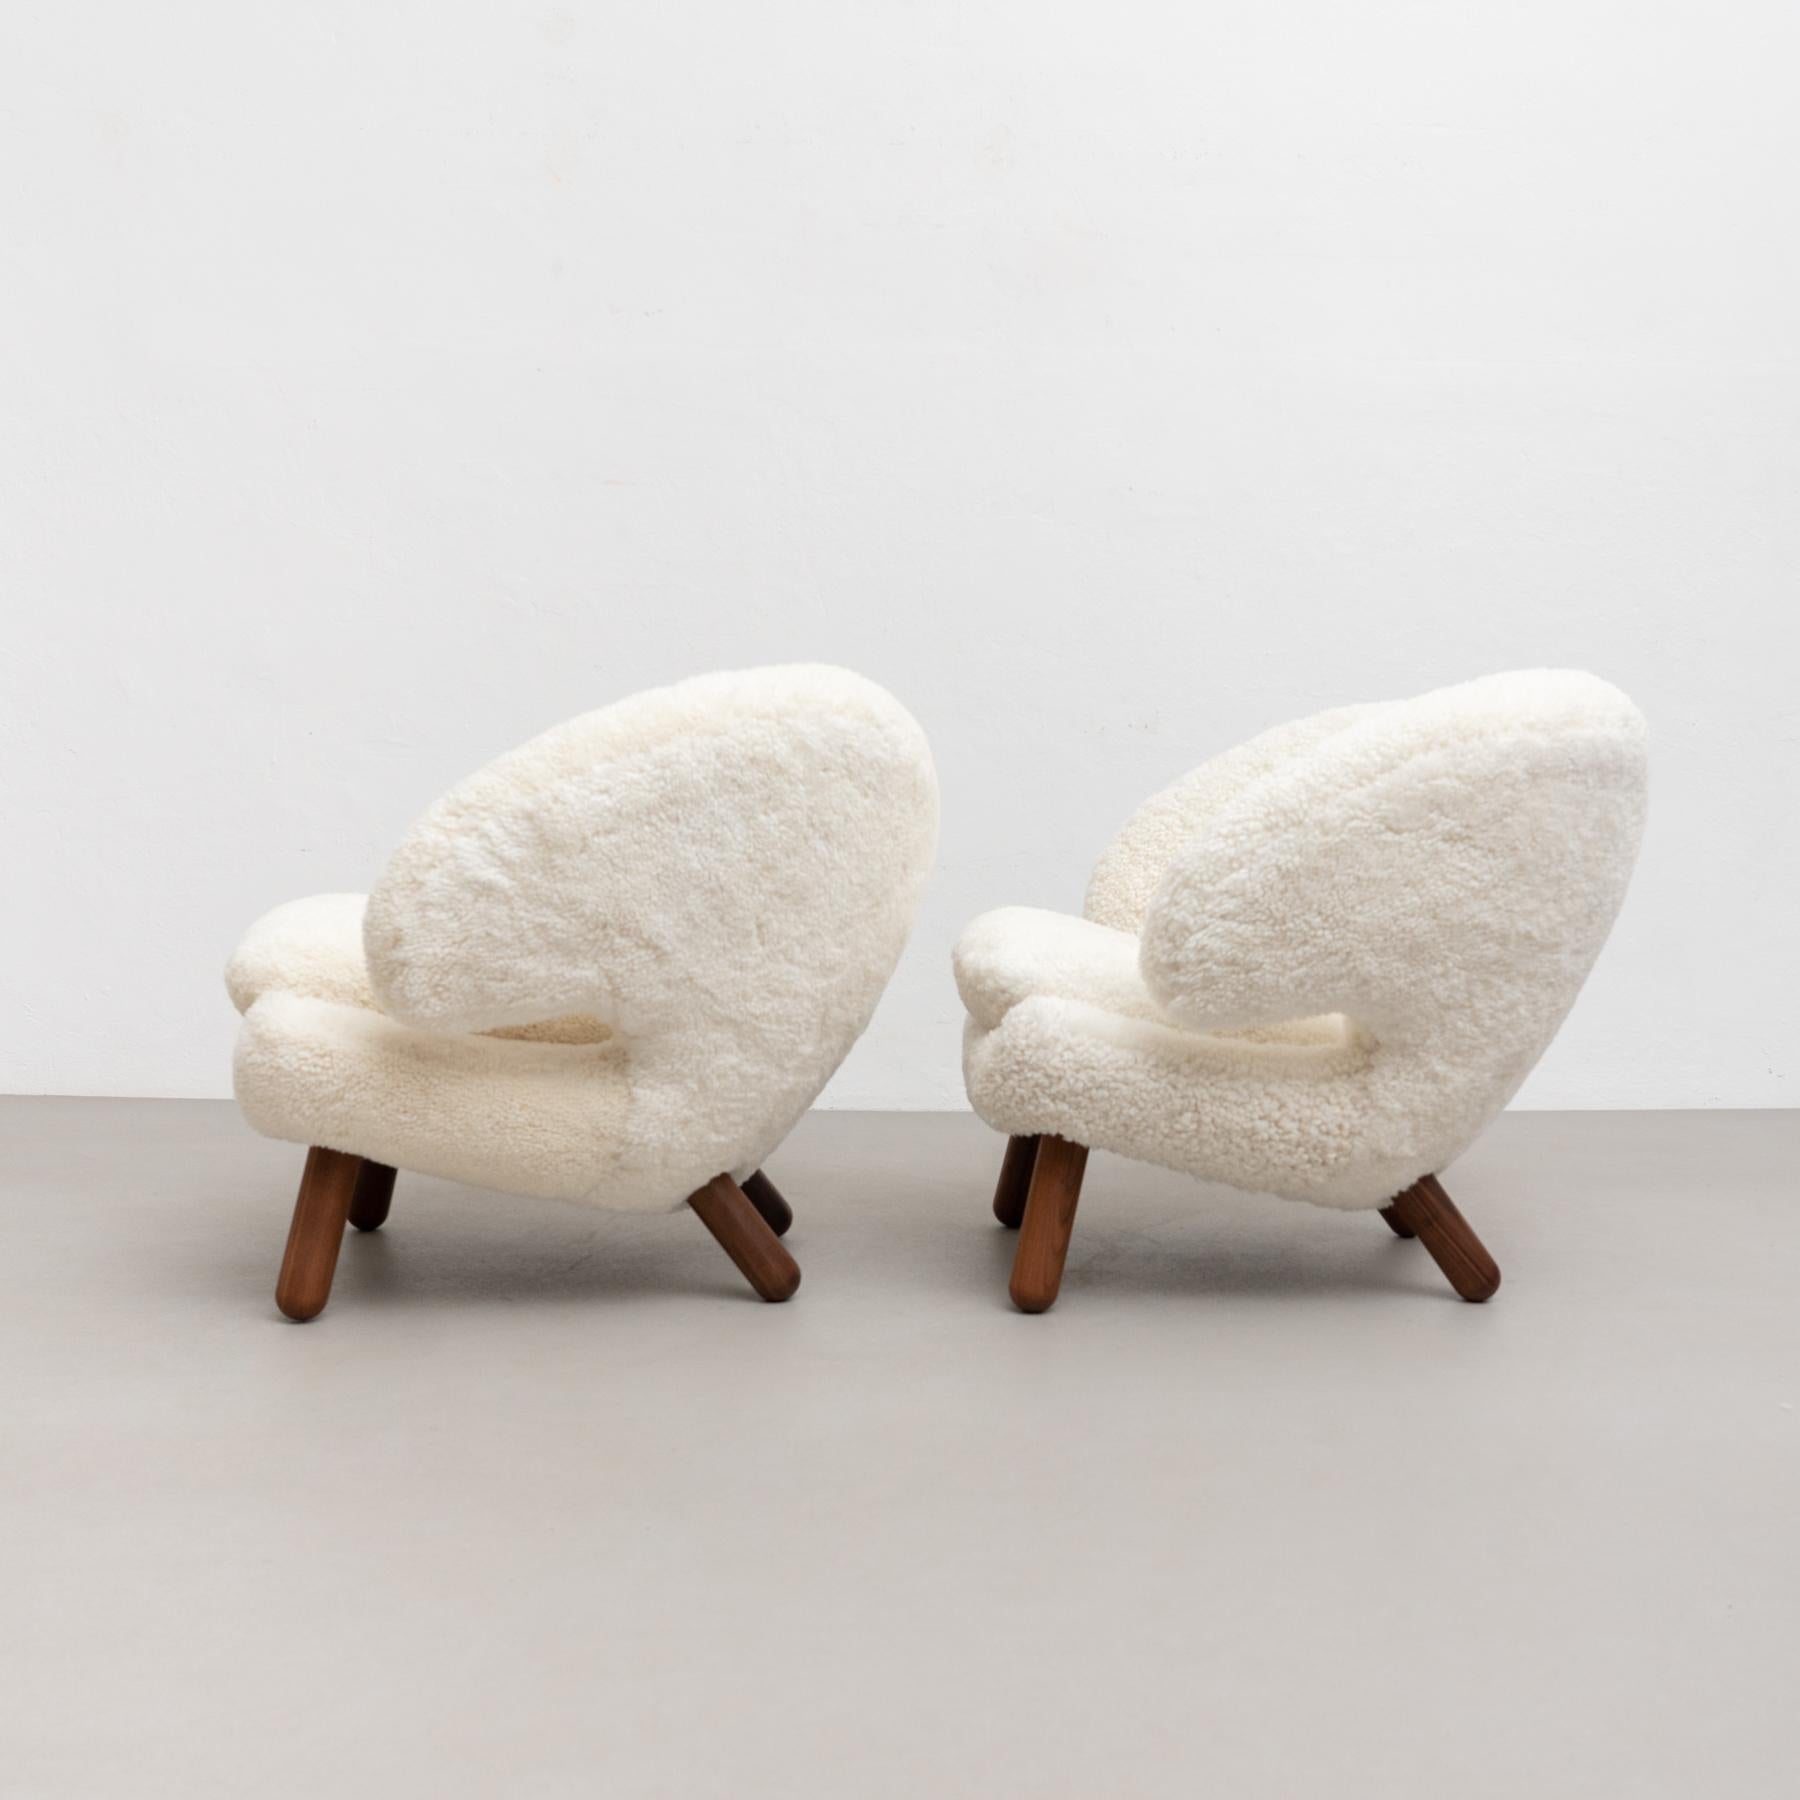 Tauchen Sie ein in die zeitlose Eleganz des Pelikan-Stuhls, einem Design-Meisterwerk von Finn Juhl aus dem Jahr 1940, das 2001 vom dänischen Haus Finn Juhls wieder in die Welt gebracht wurde. Gepolstert mit luxuriösem Gotland-Schafsfell ist jedes